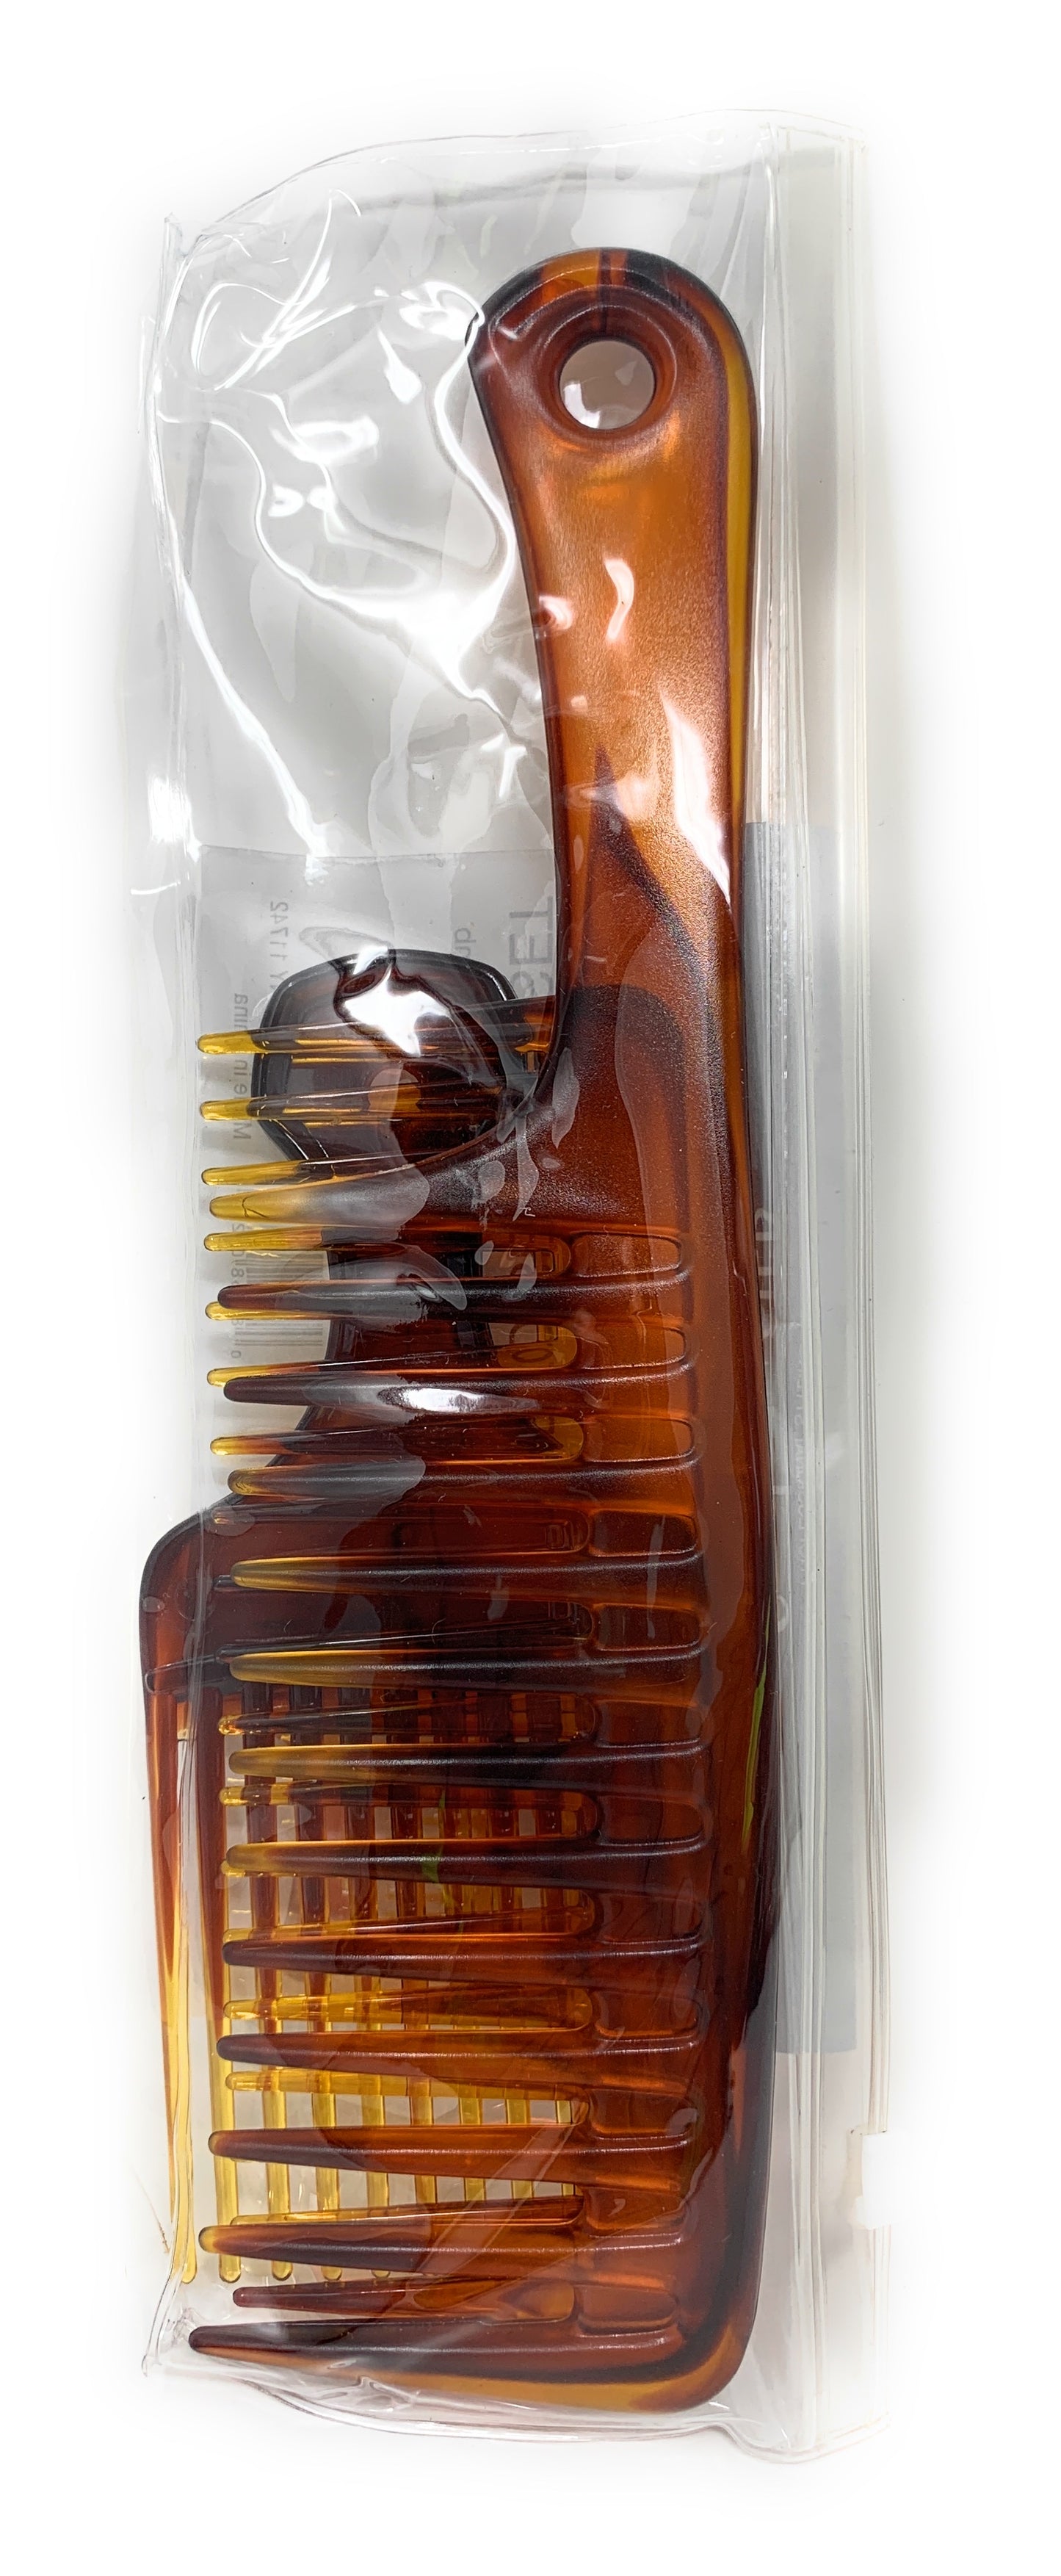 Scalpmaster Comb Set Combs With Handles Pik Comb Wet Comb Detangling Comb 3 Pcs